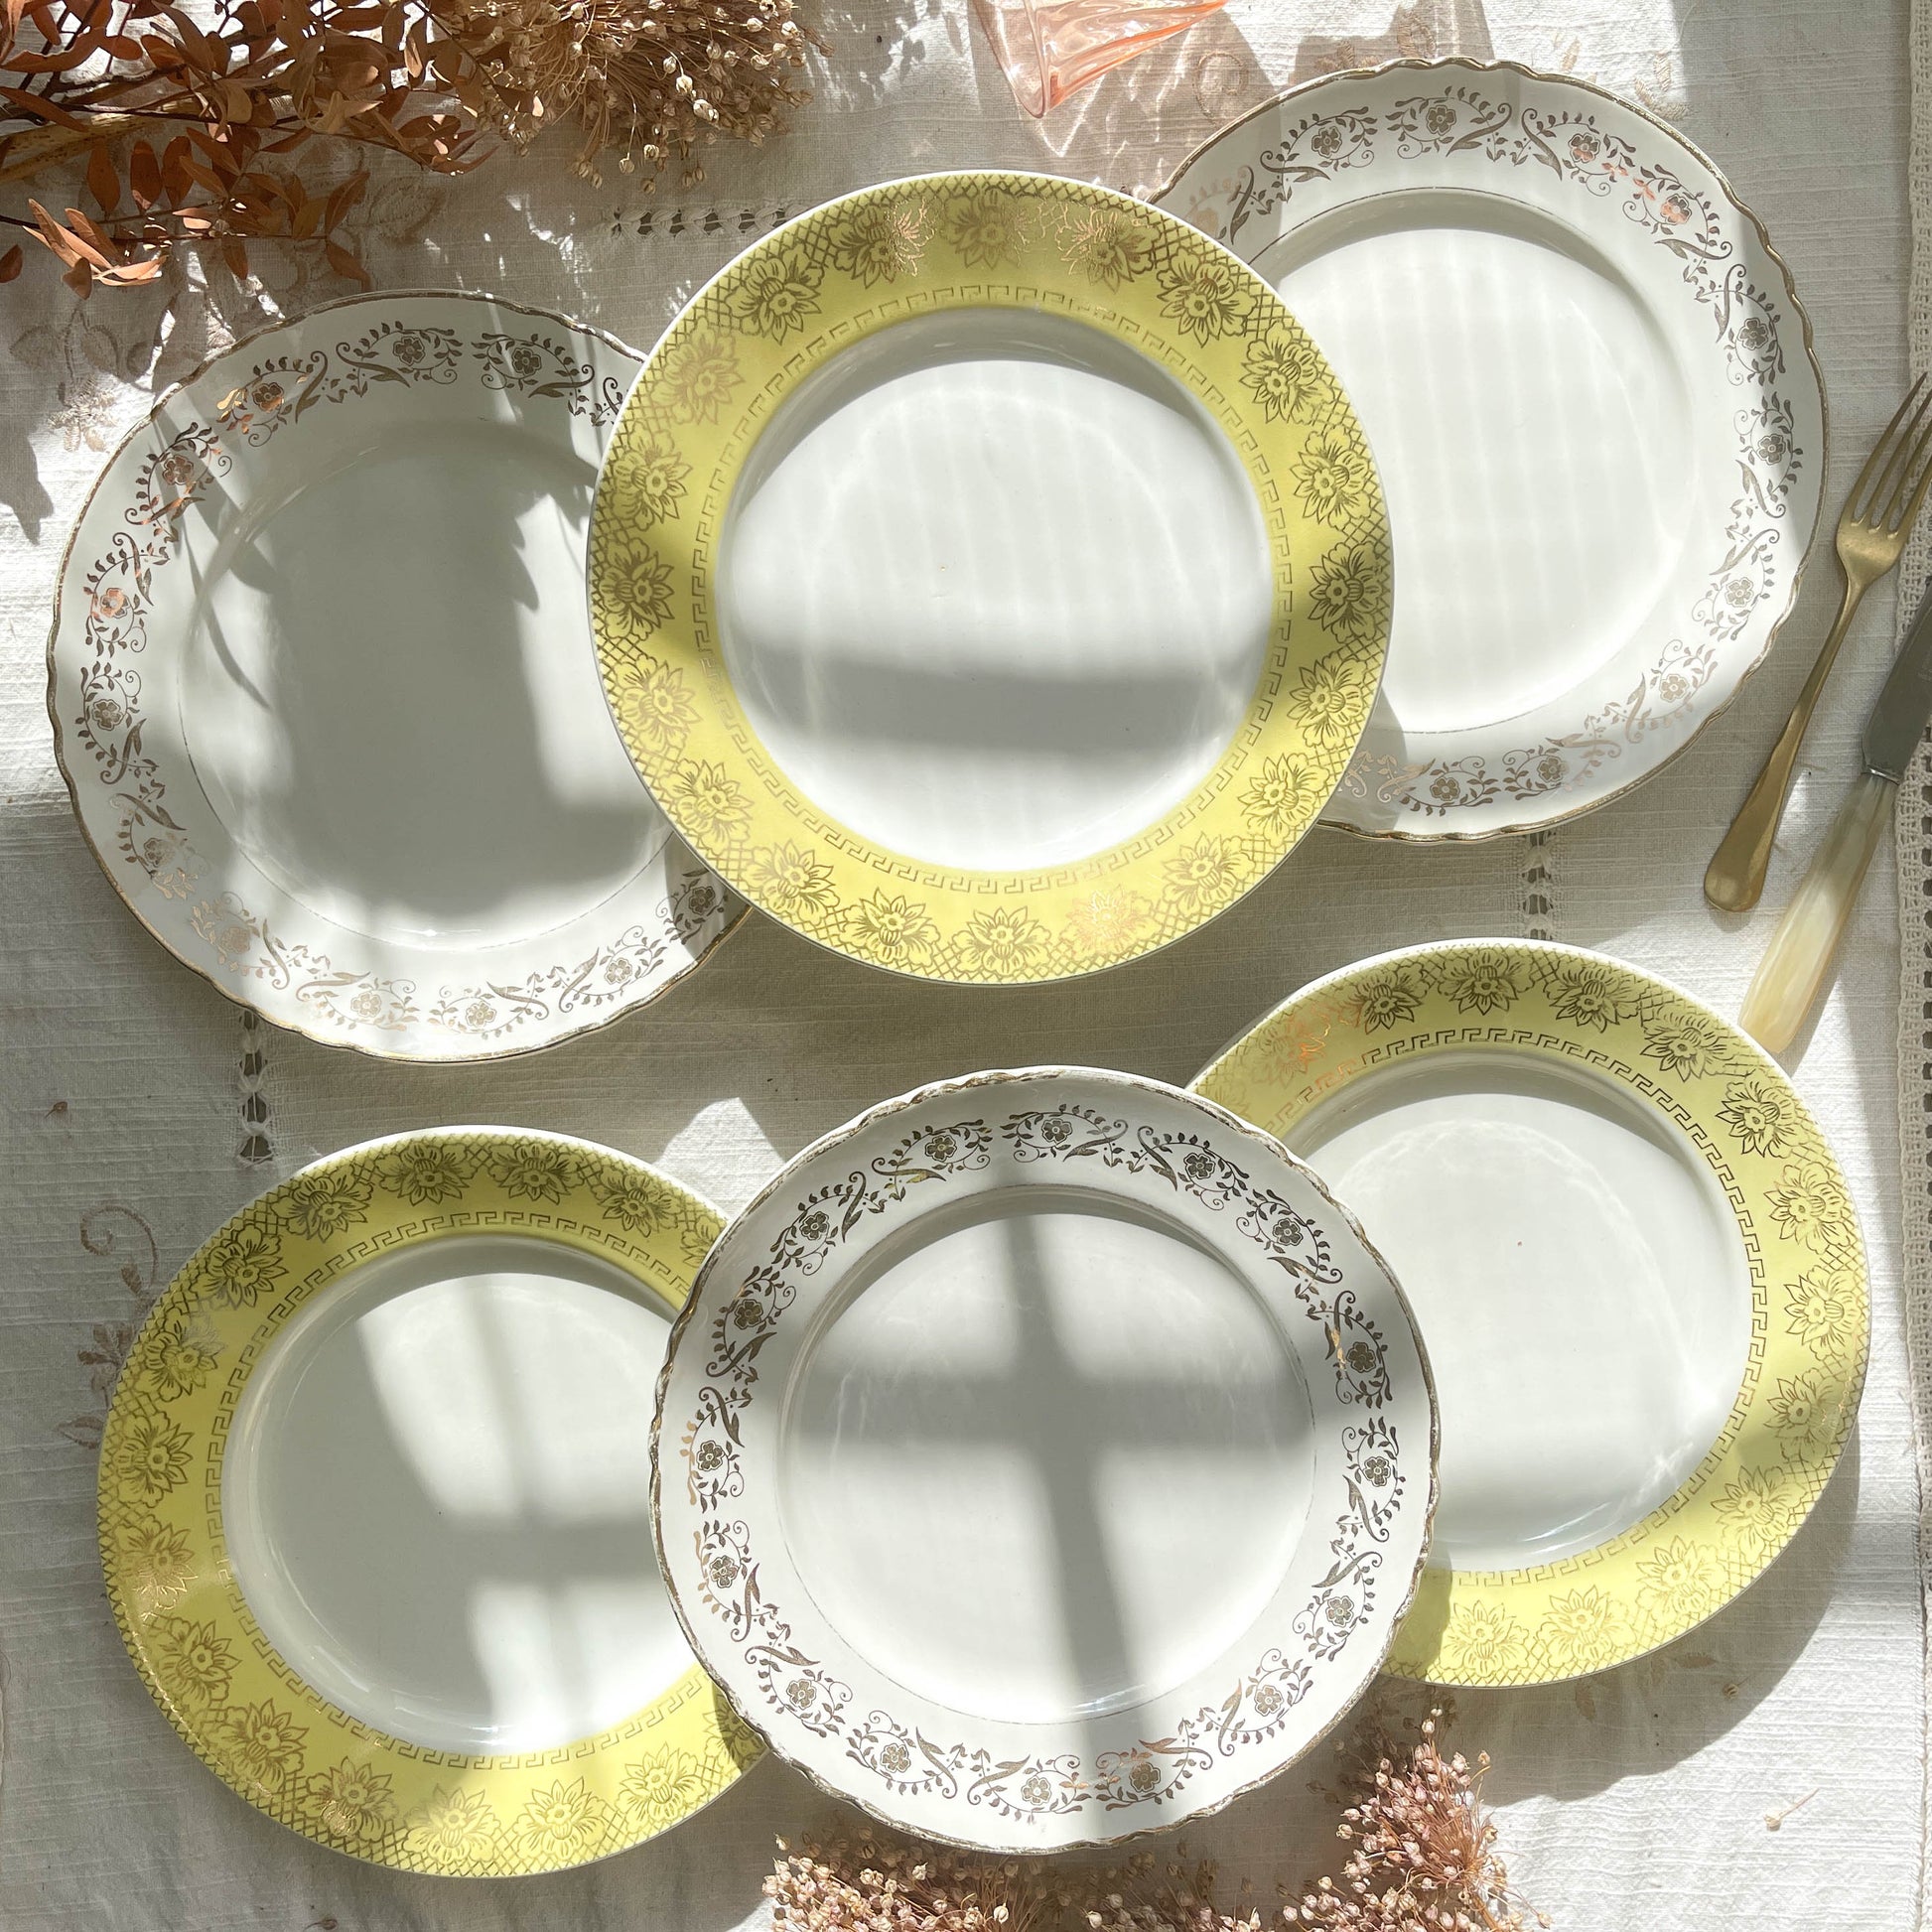 6 Assiettes vintage dépareillées blanches jaune dorée motifs fleuris